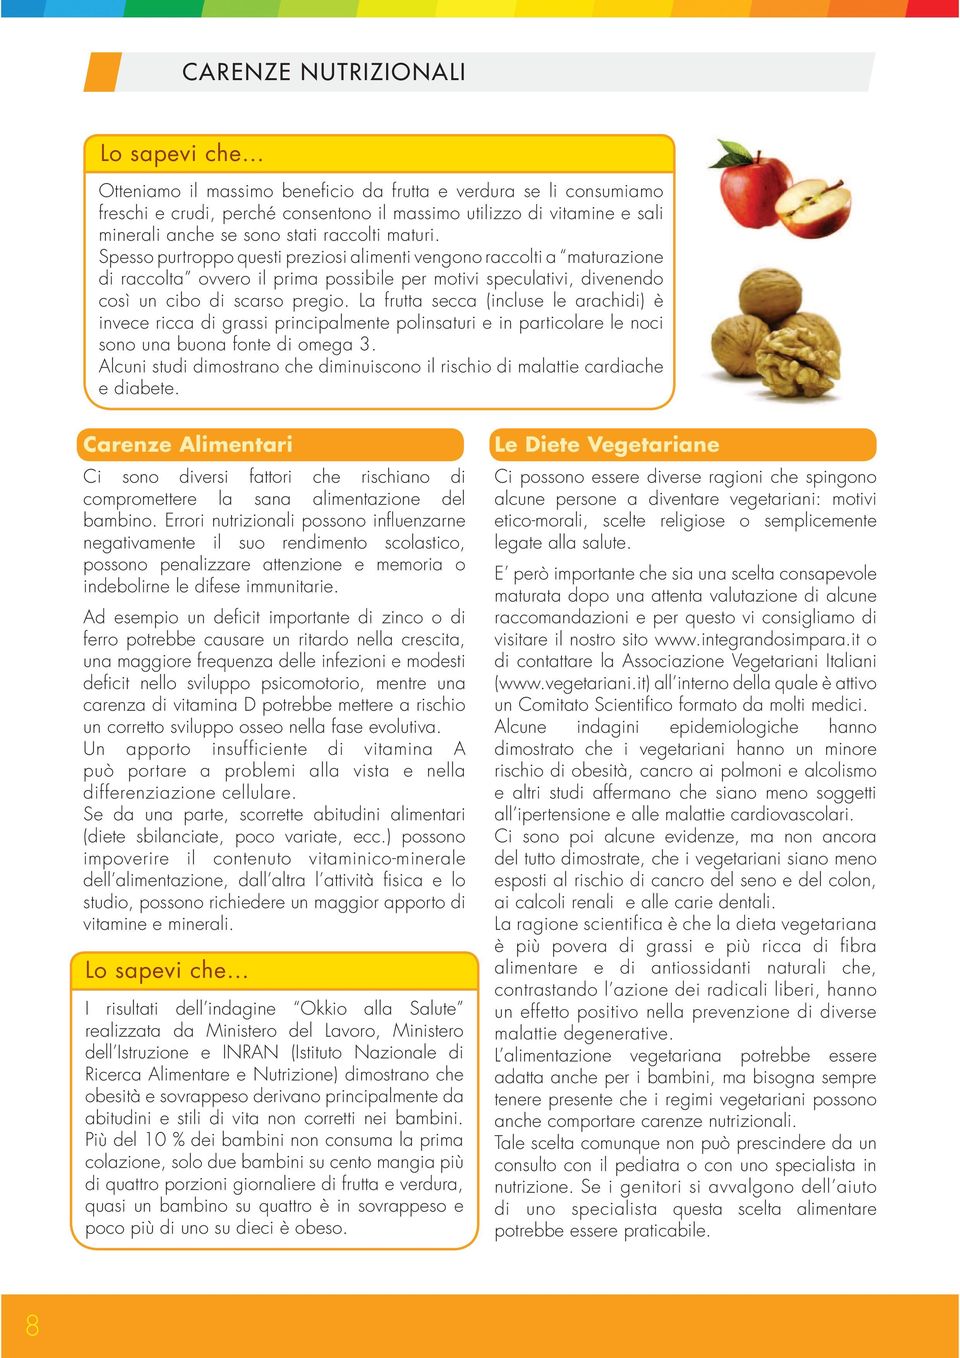 La frutta secca (incluse le arachidi) è invece ricca di grassi principalmente polinsaturi e in particolare le noci sono una buona fonte di omega 3.